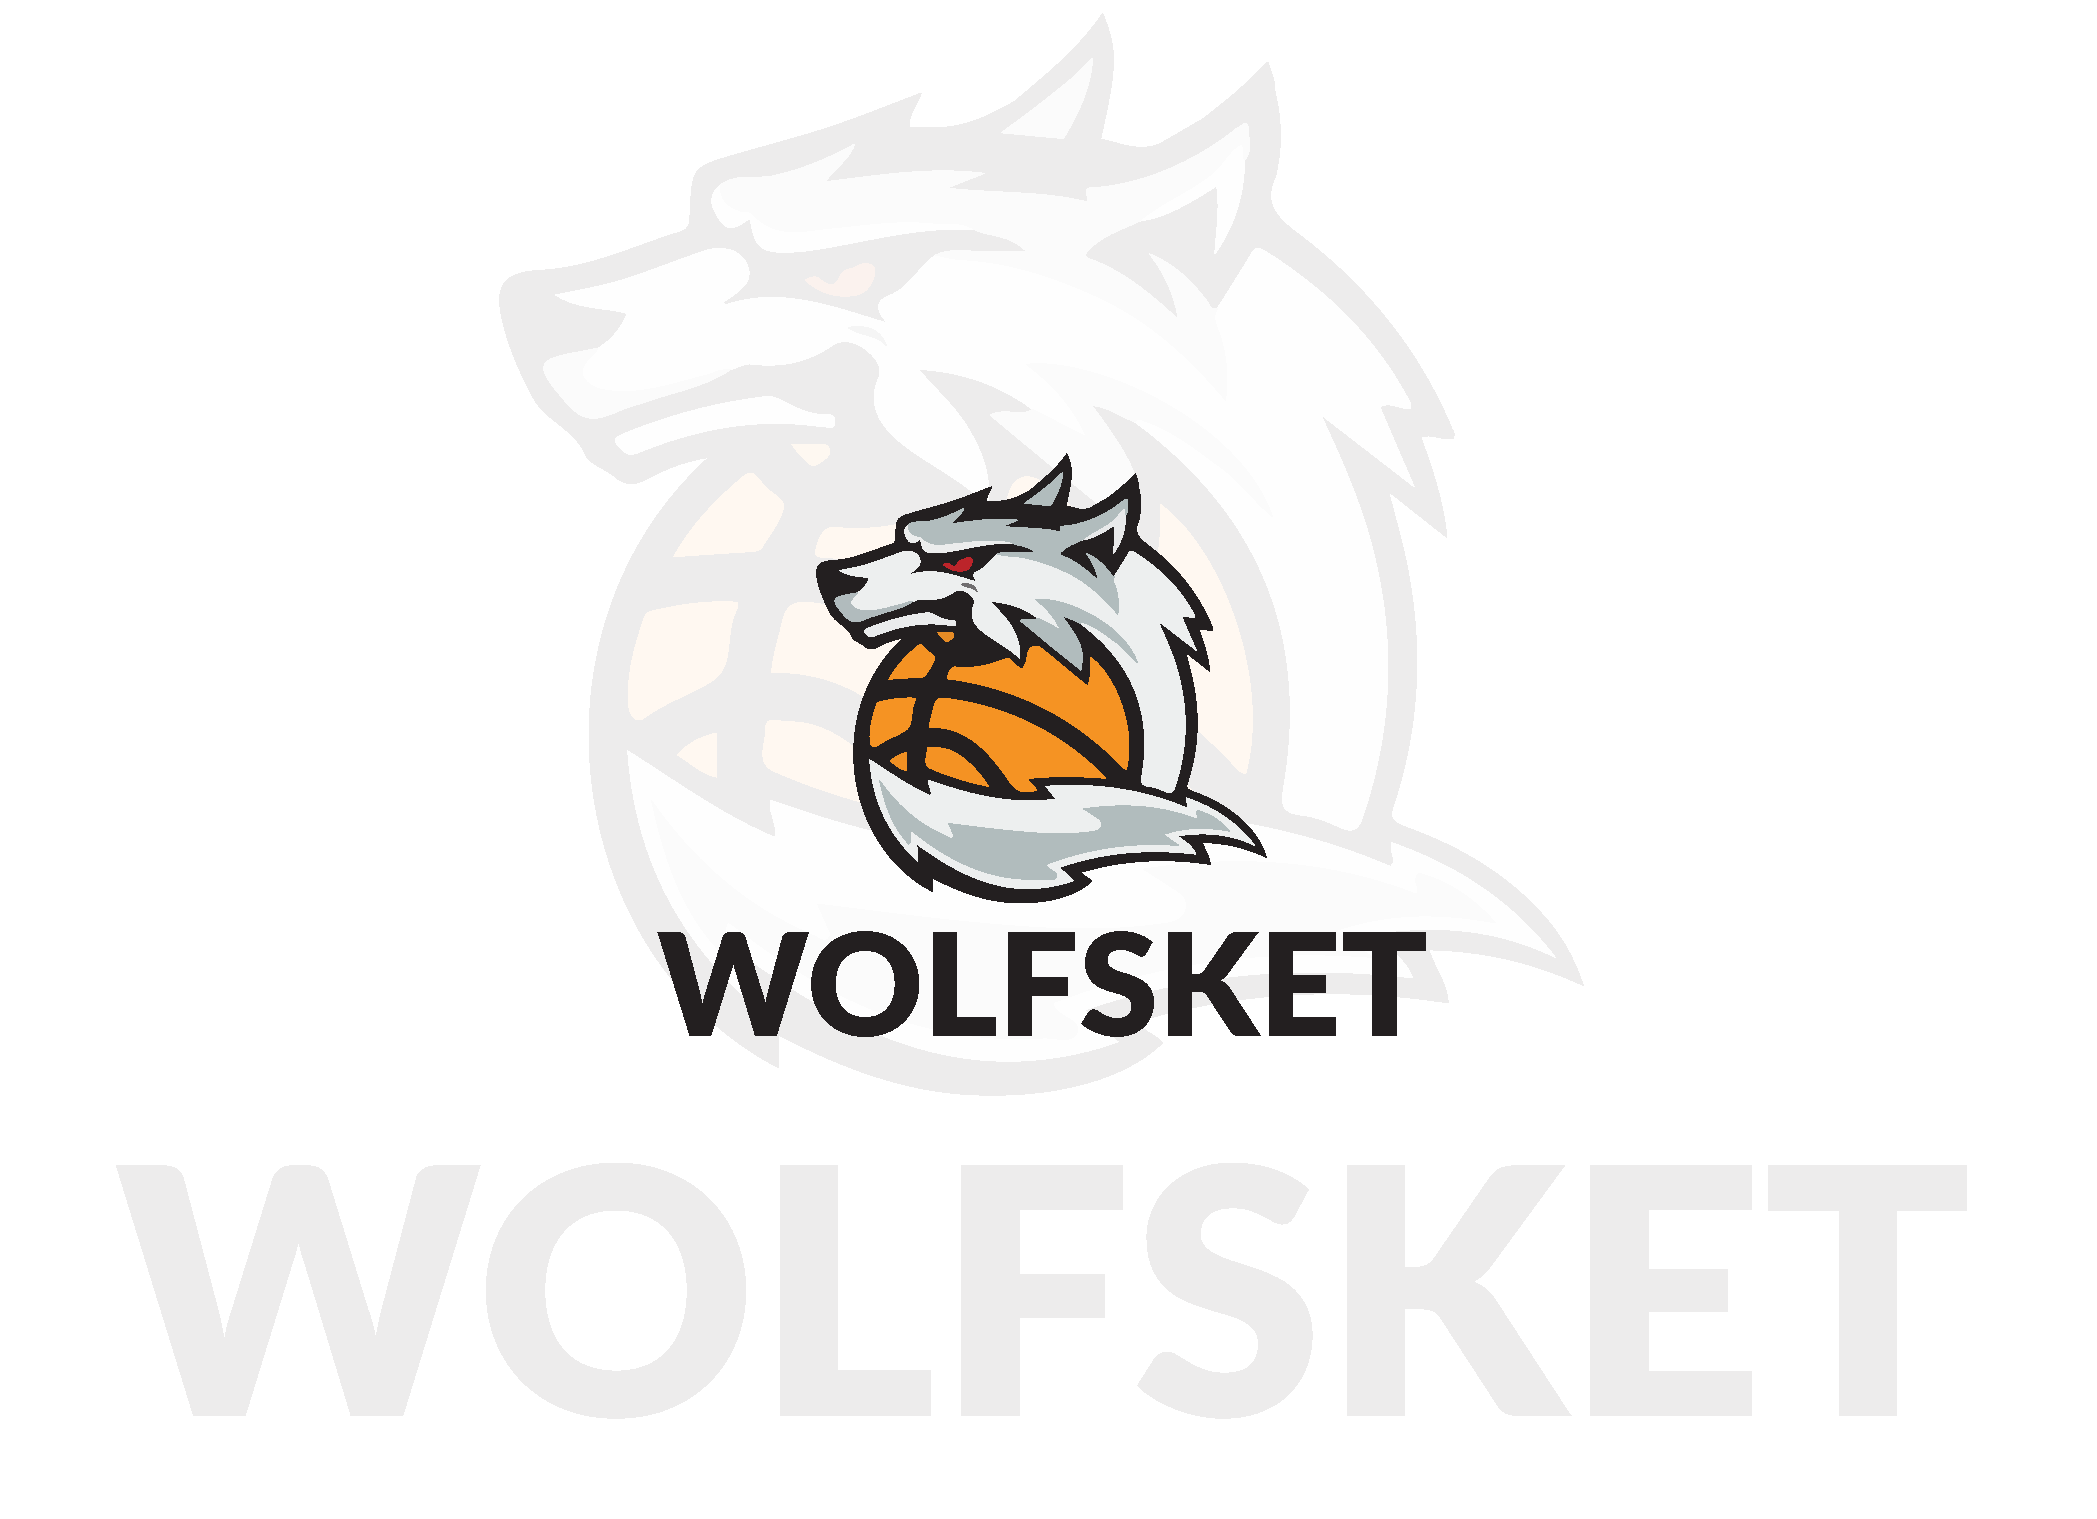 Wolf Basketball Logo - Free Wolf Basketball Logo Template